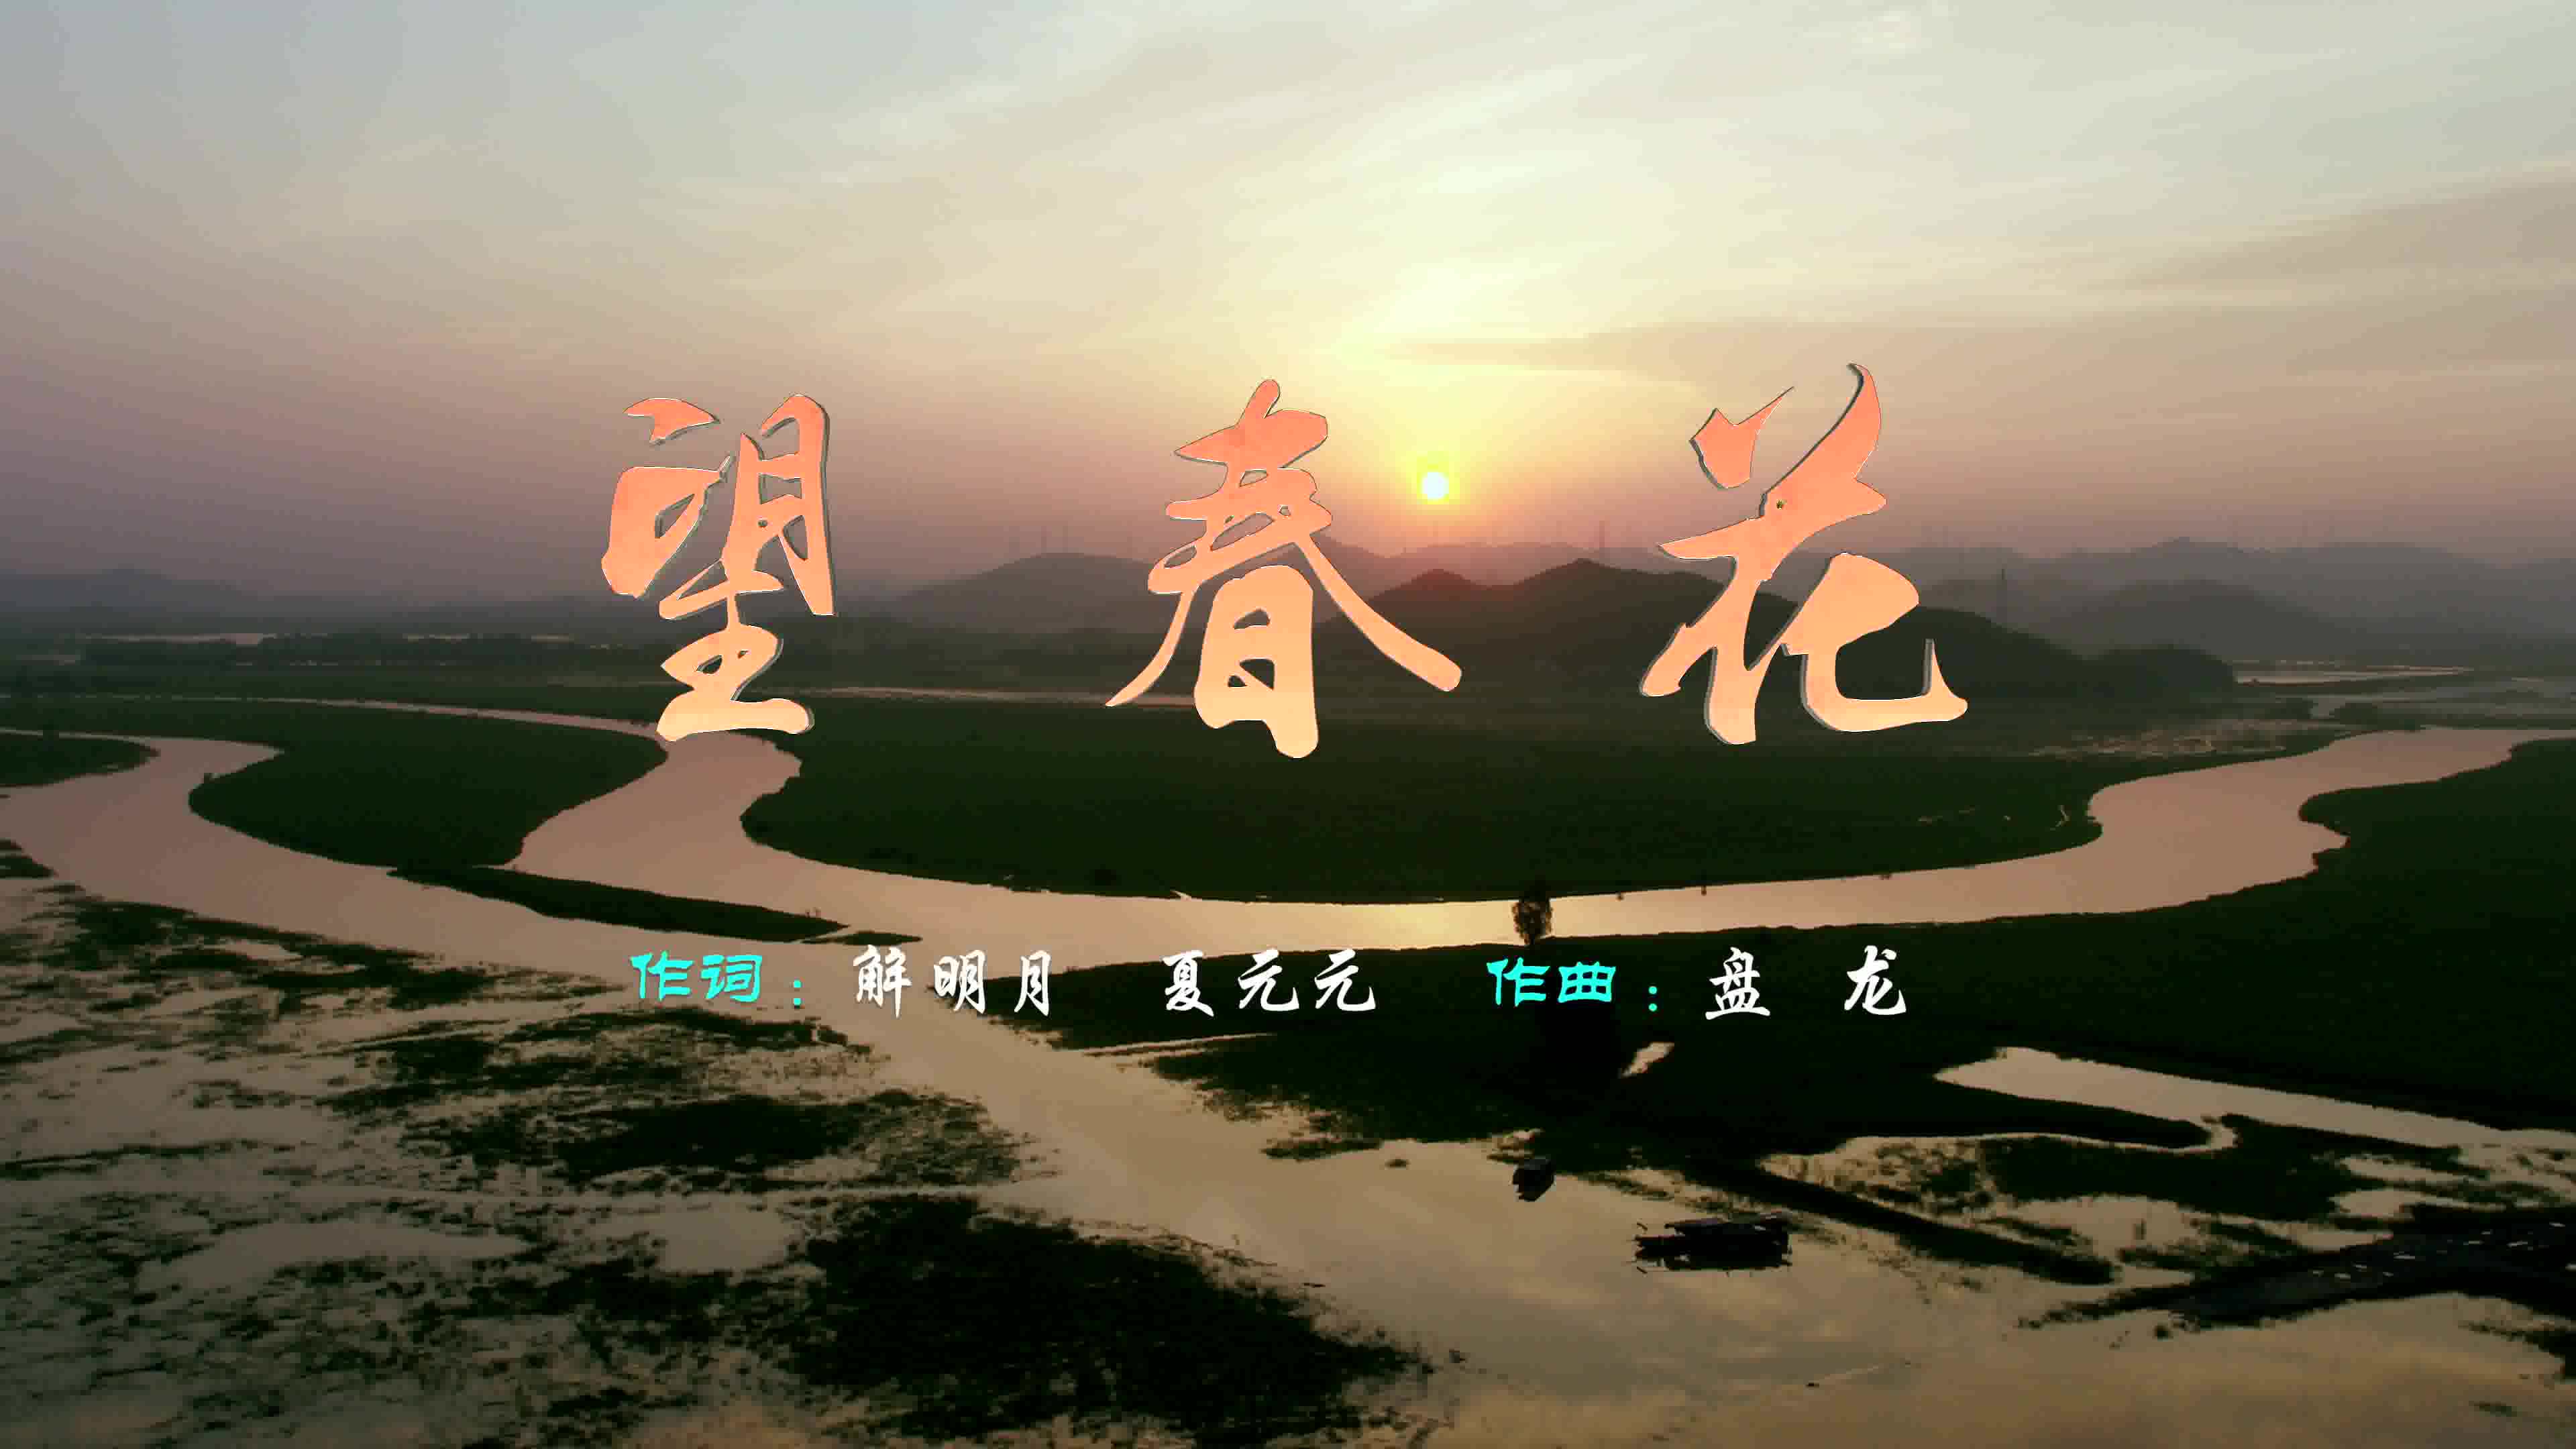 第九批“中国梦”主题新创作歌曲：《望春花》